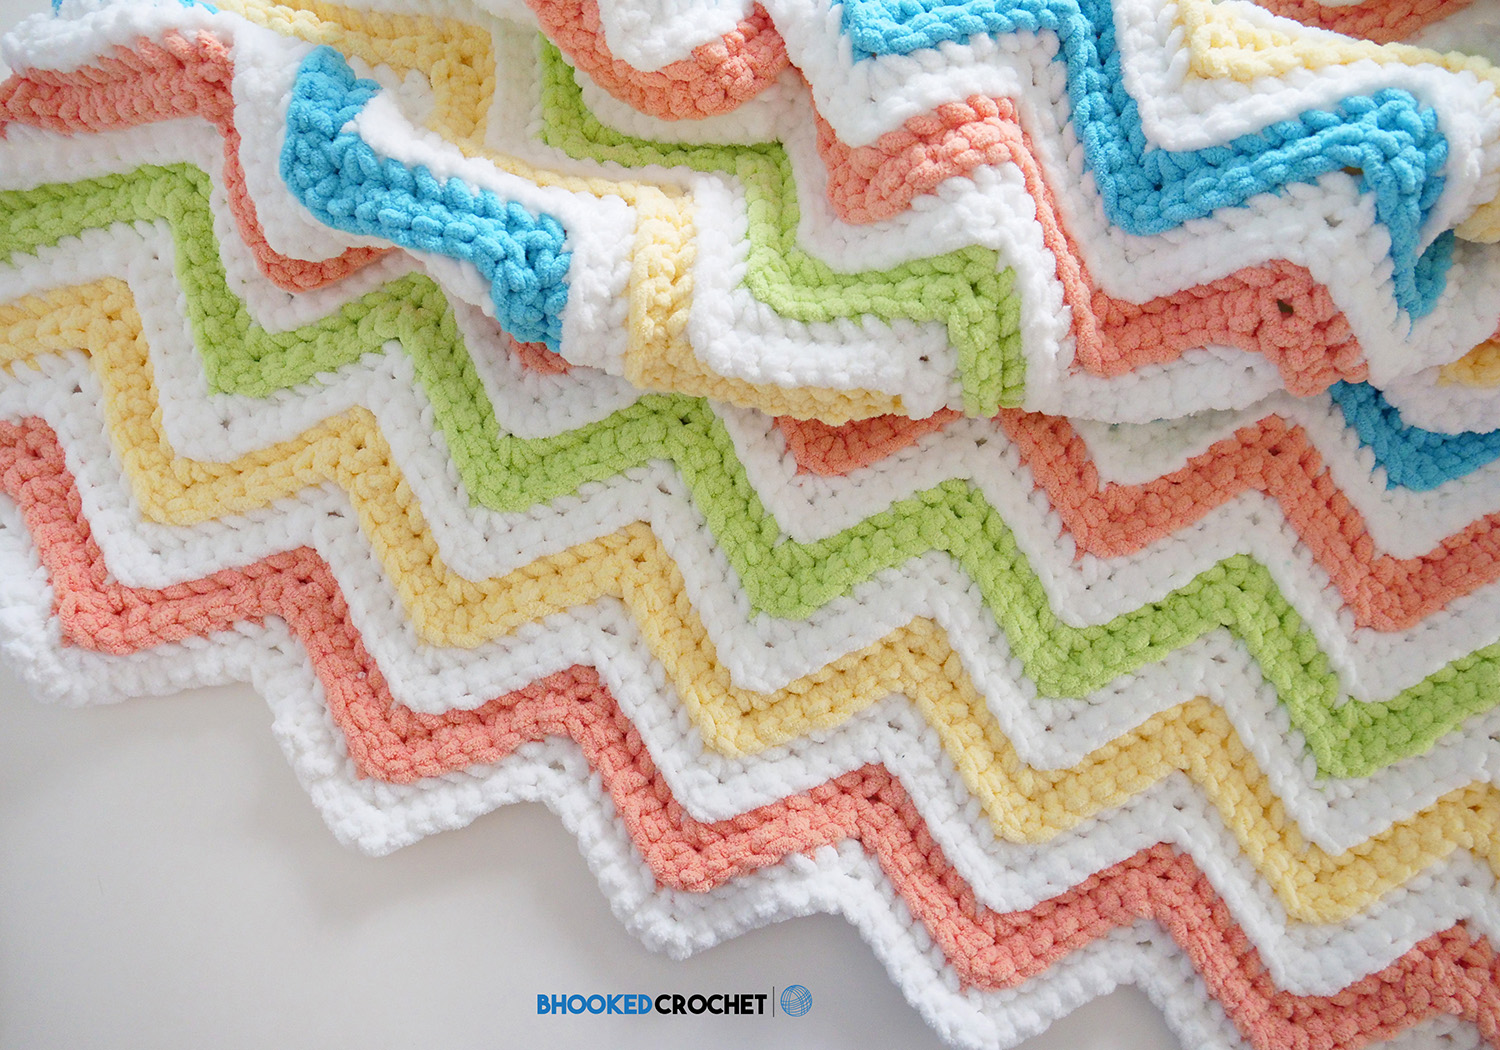 Bernat Crochet Happy Baby Blanket Pattern